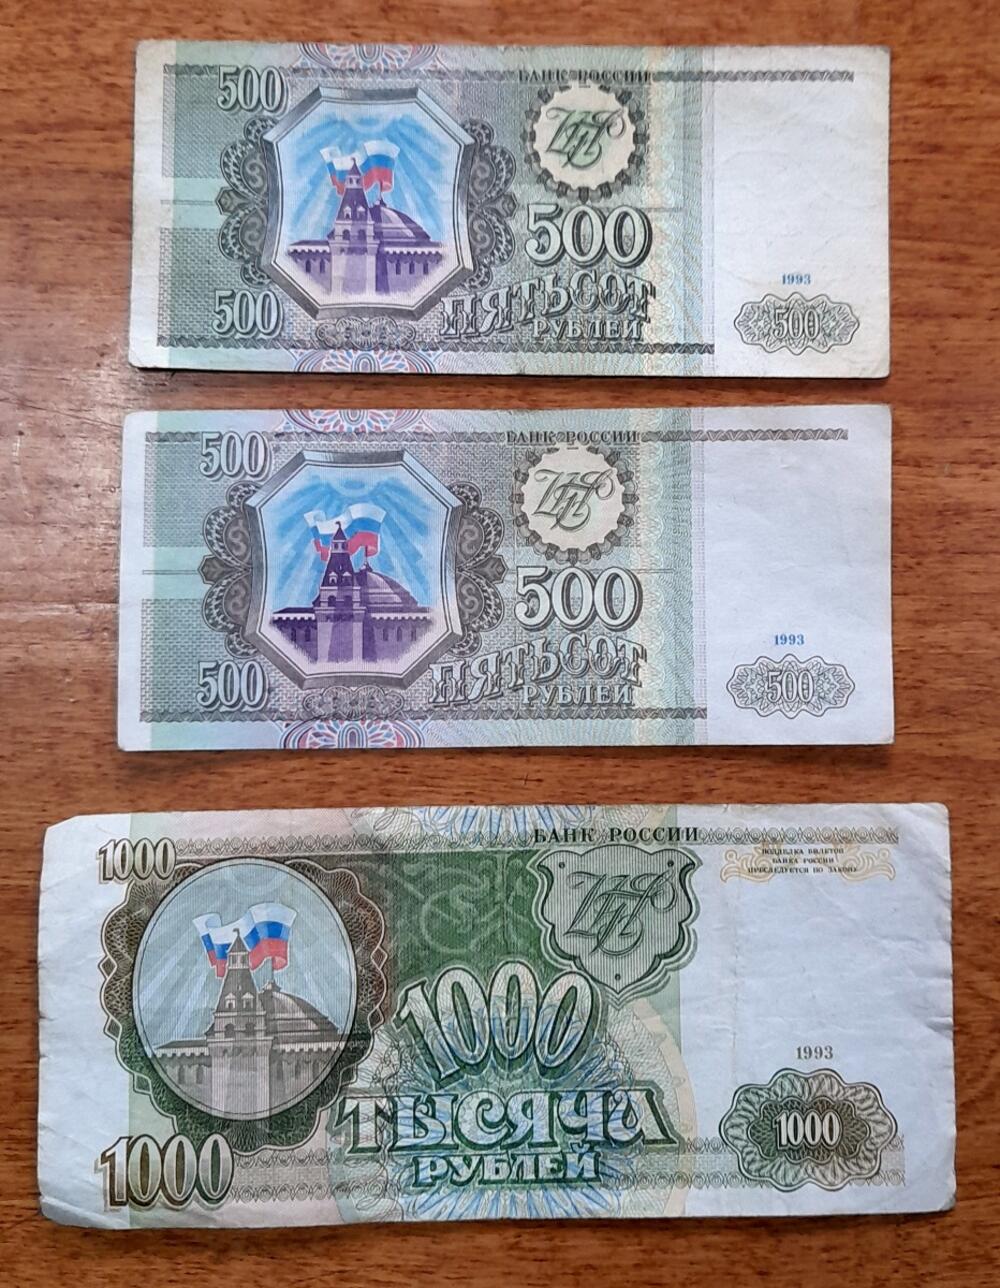 Jugoslovenski novac